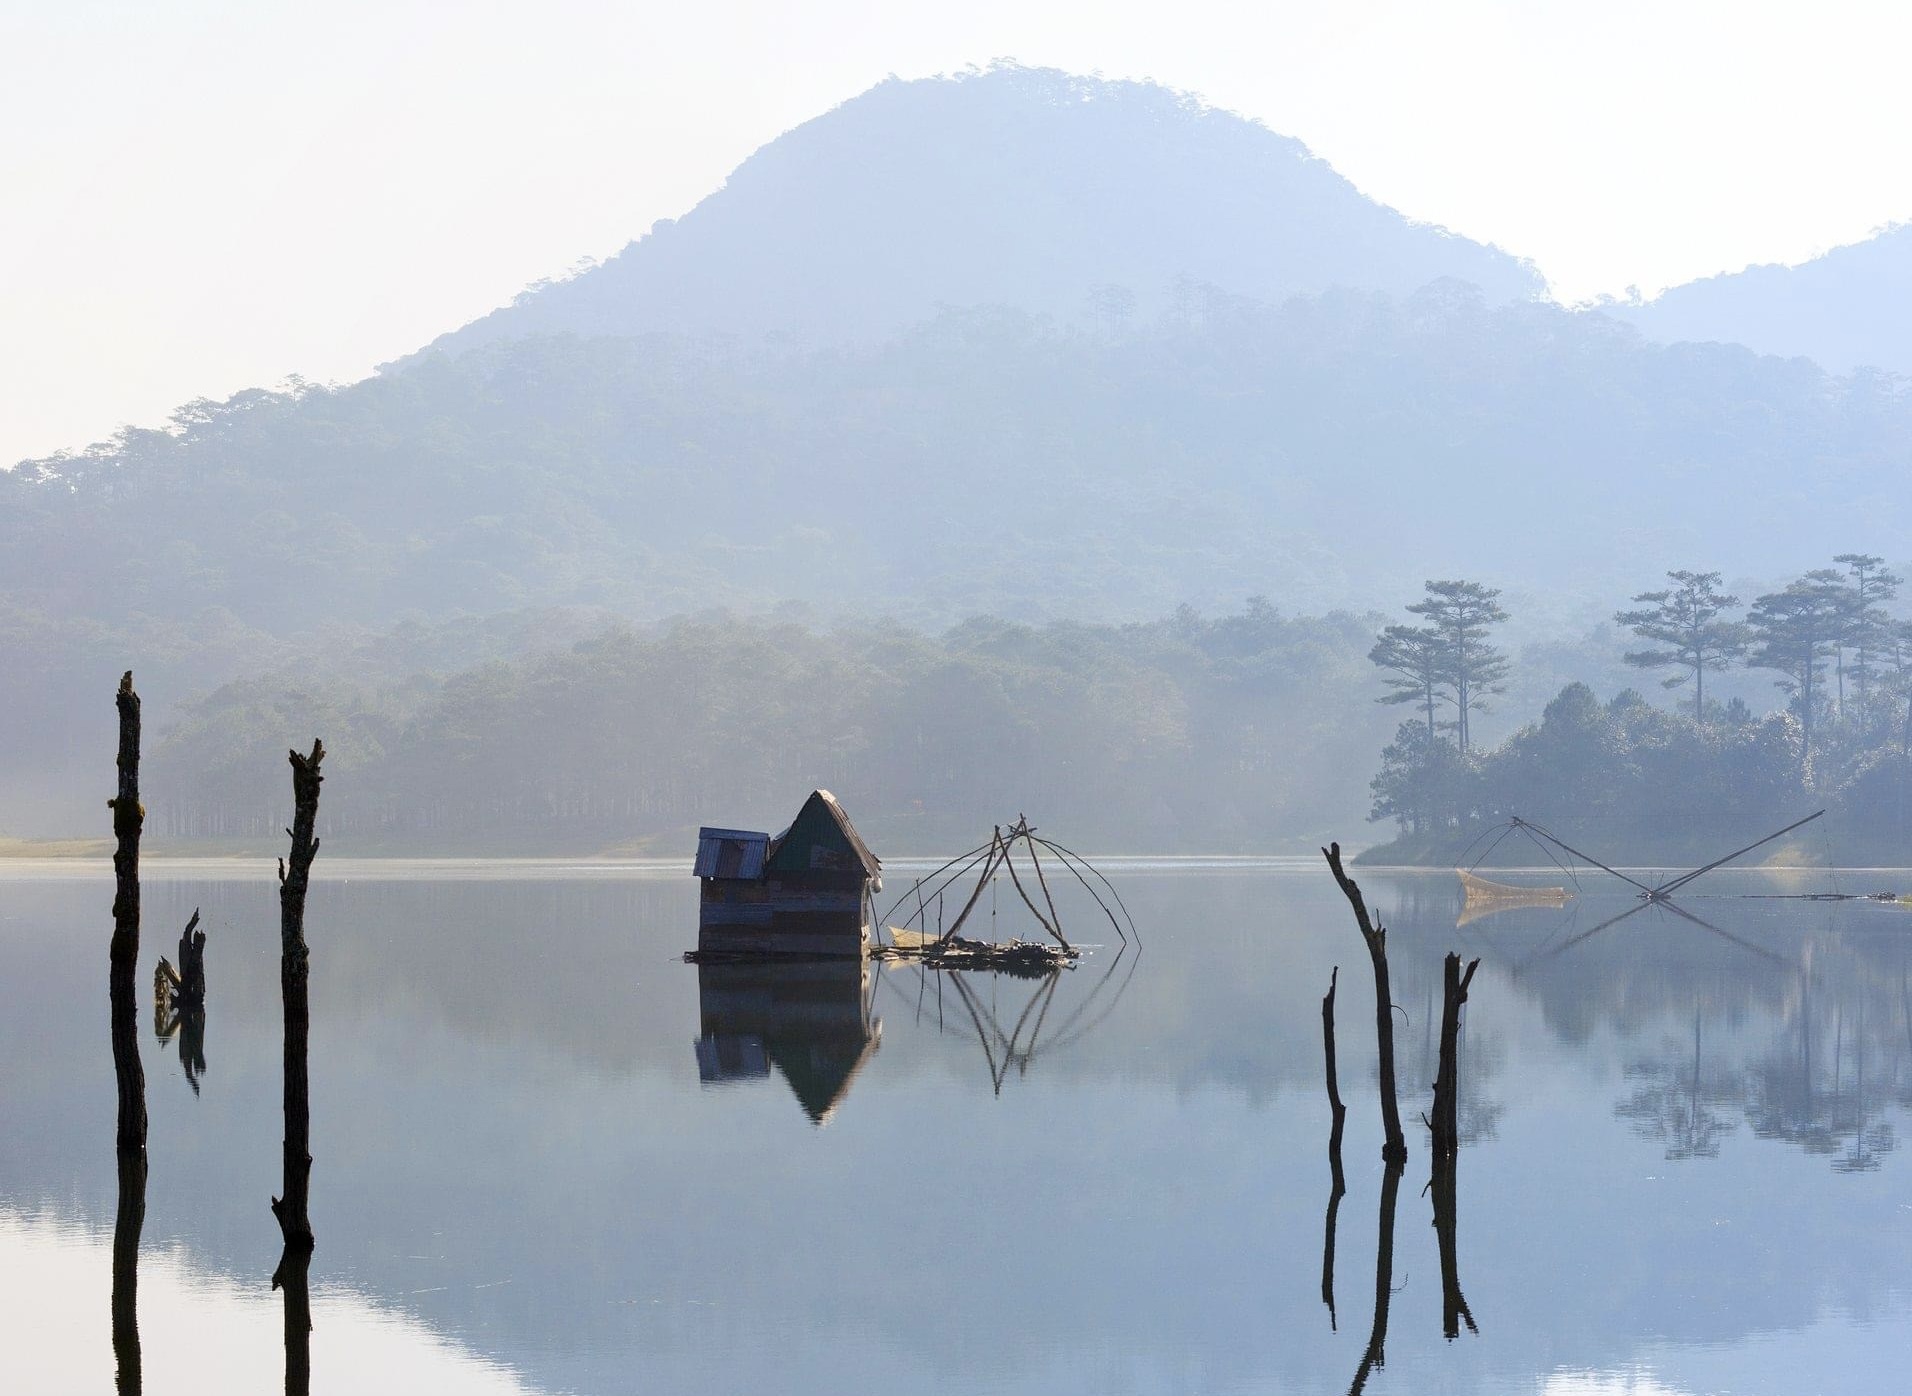 Xử lý dứt điểm tình trạng nhà nổi, lồng bè trái phép trên hồ Tuyền Lâm